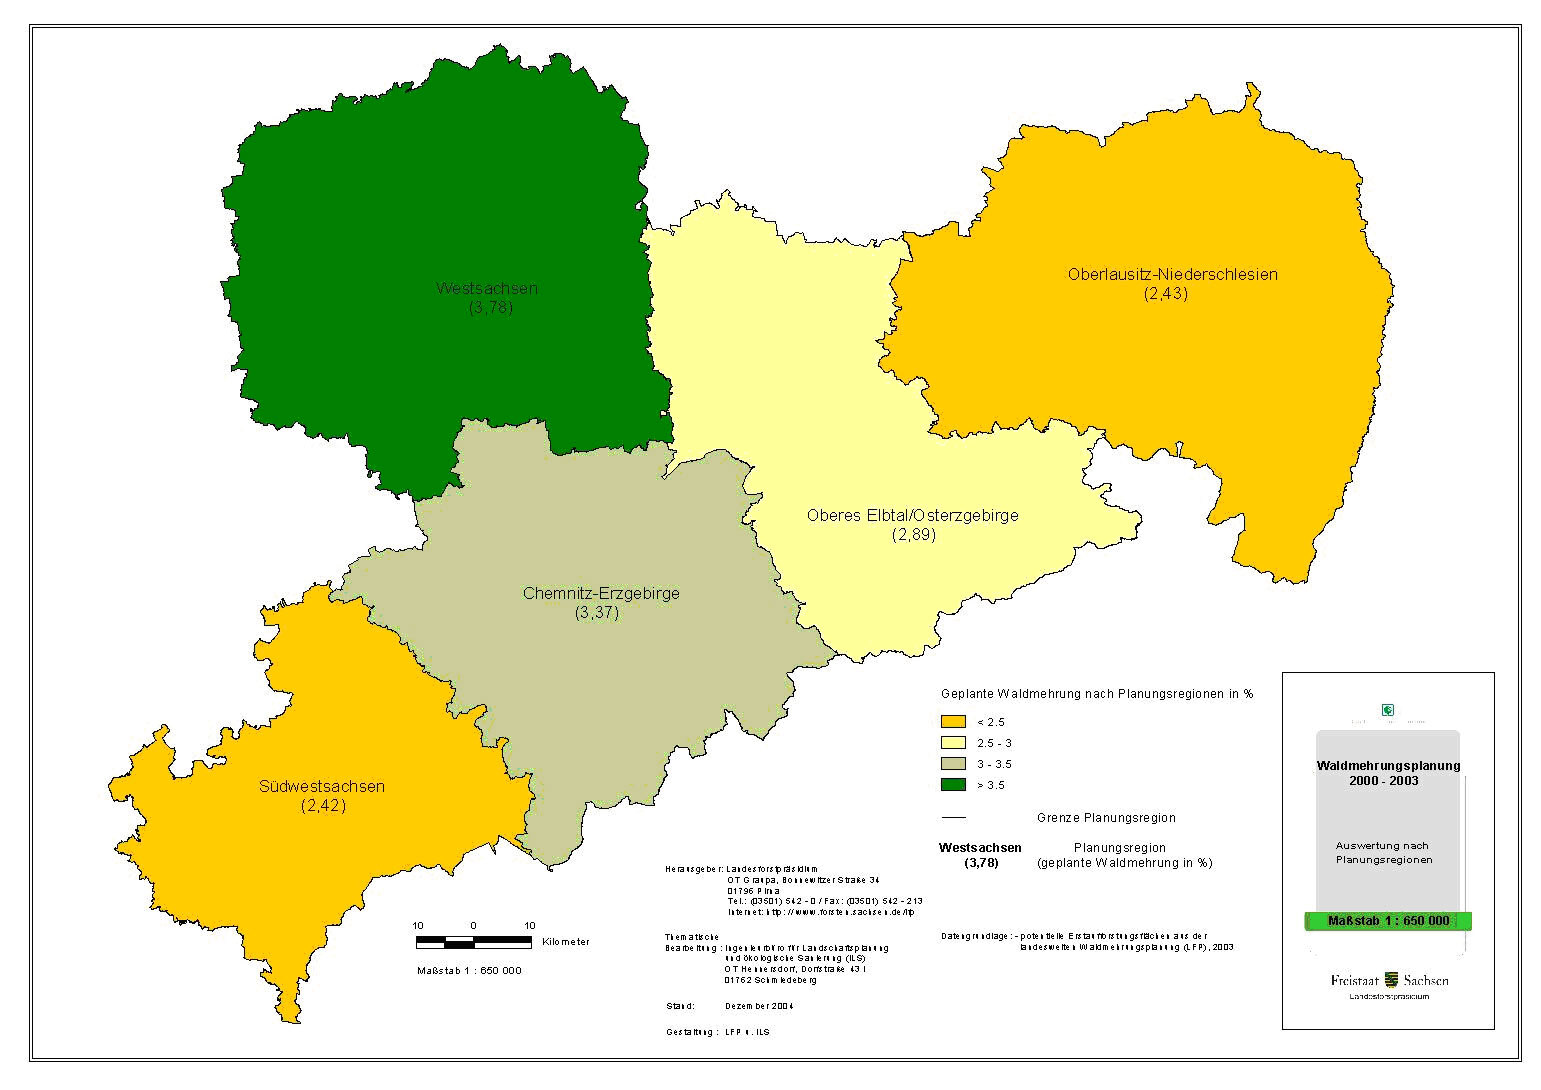 Karte: Auswertung der Waldmehrungsplanung